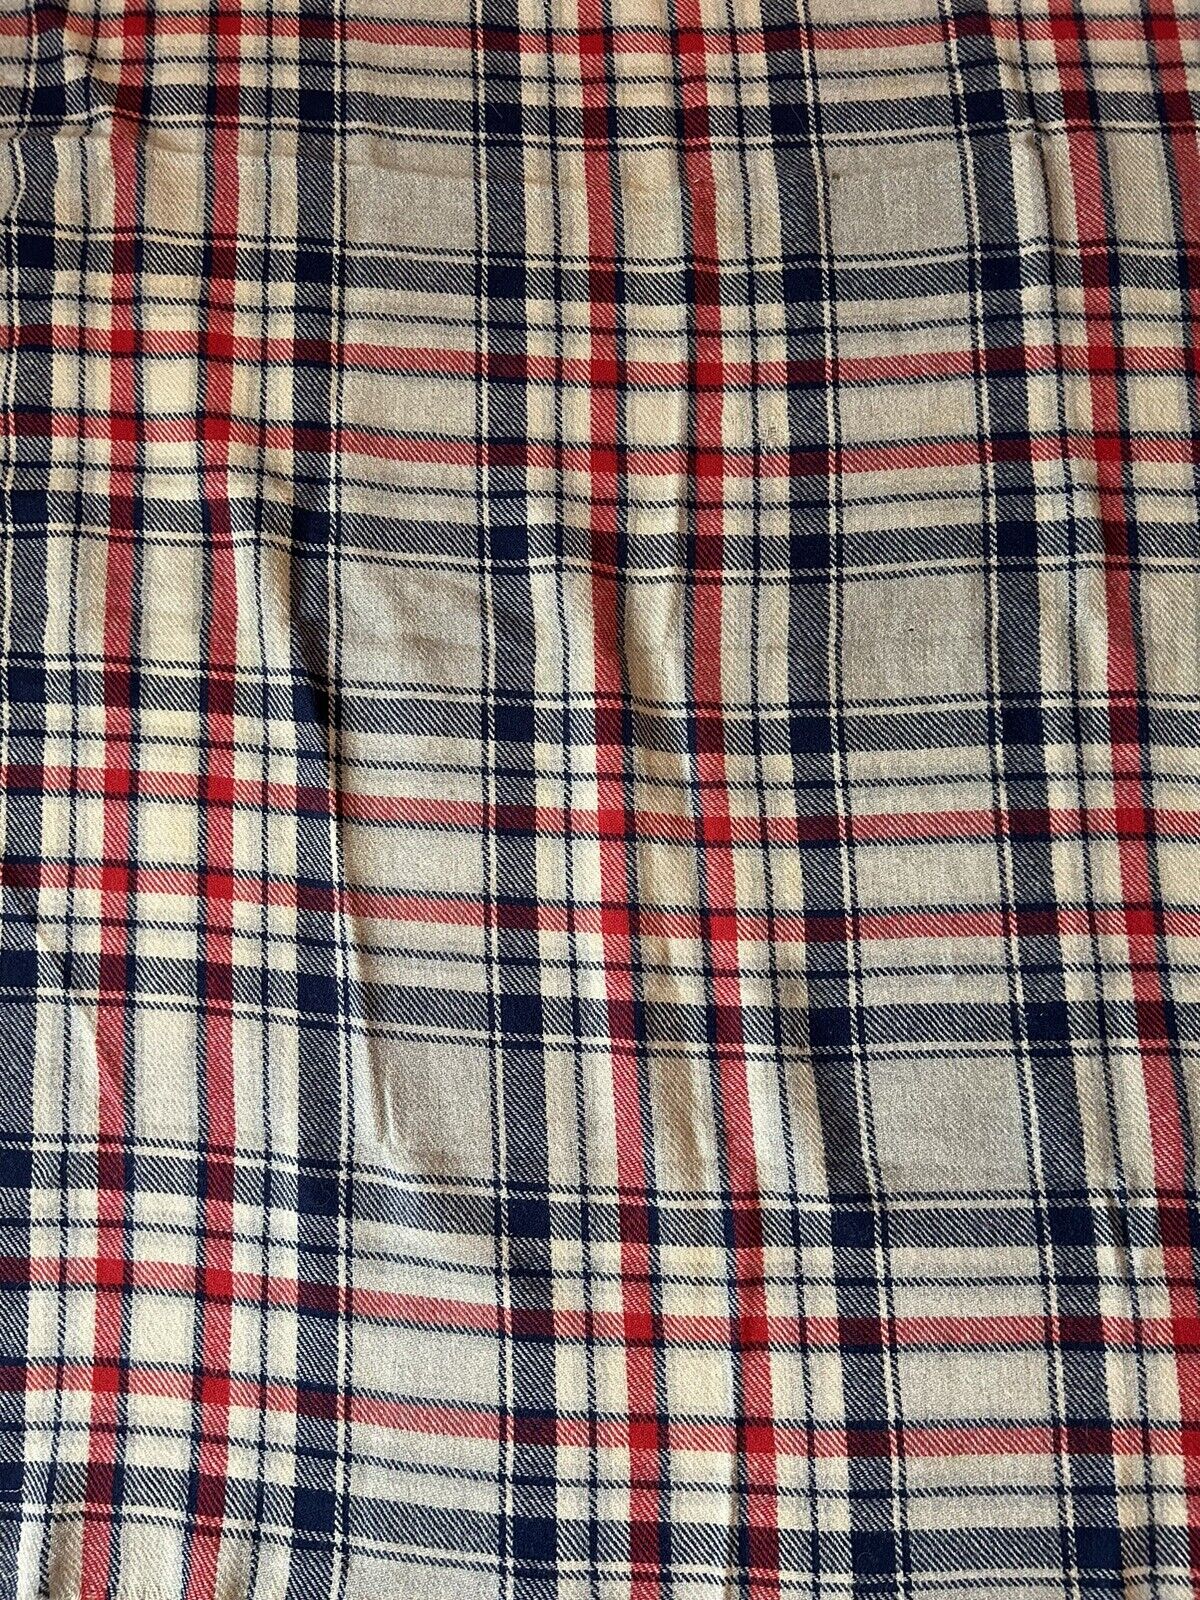 Vintage Wool Blanket  Plaid 42x56 + Fringe Red Navy Grey Beige